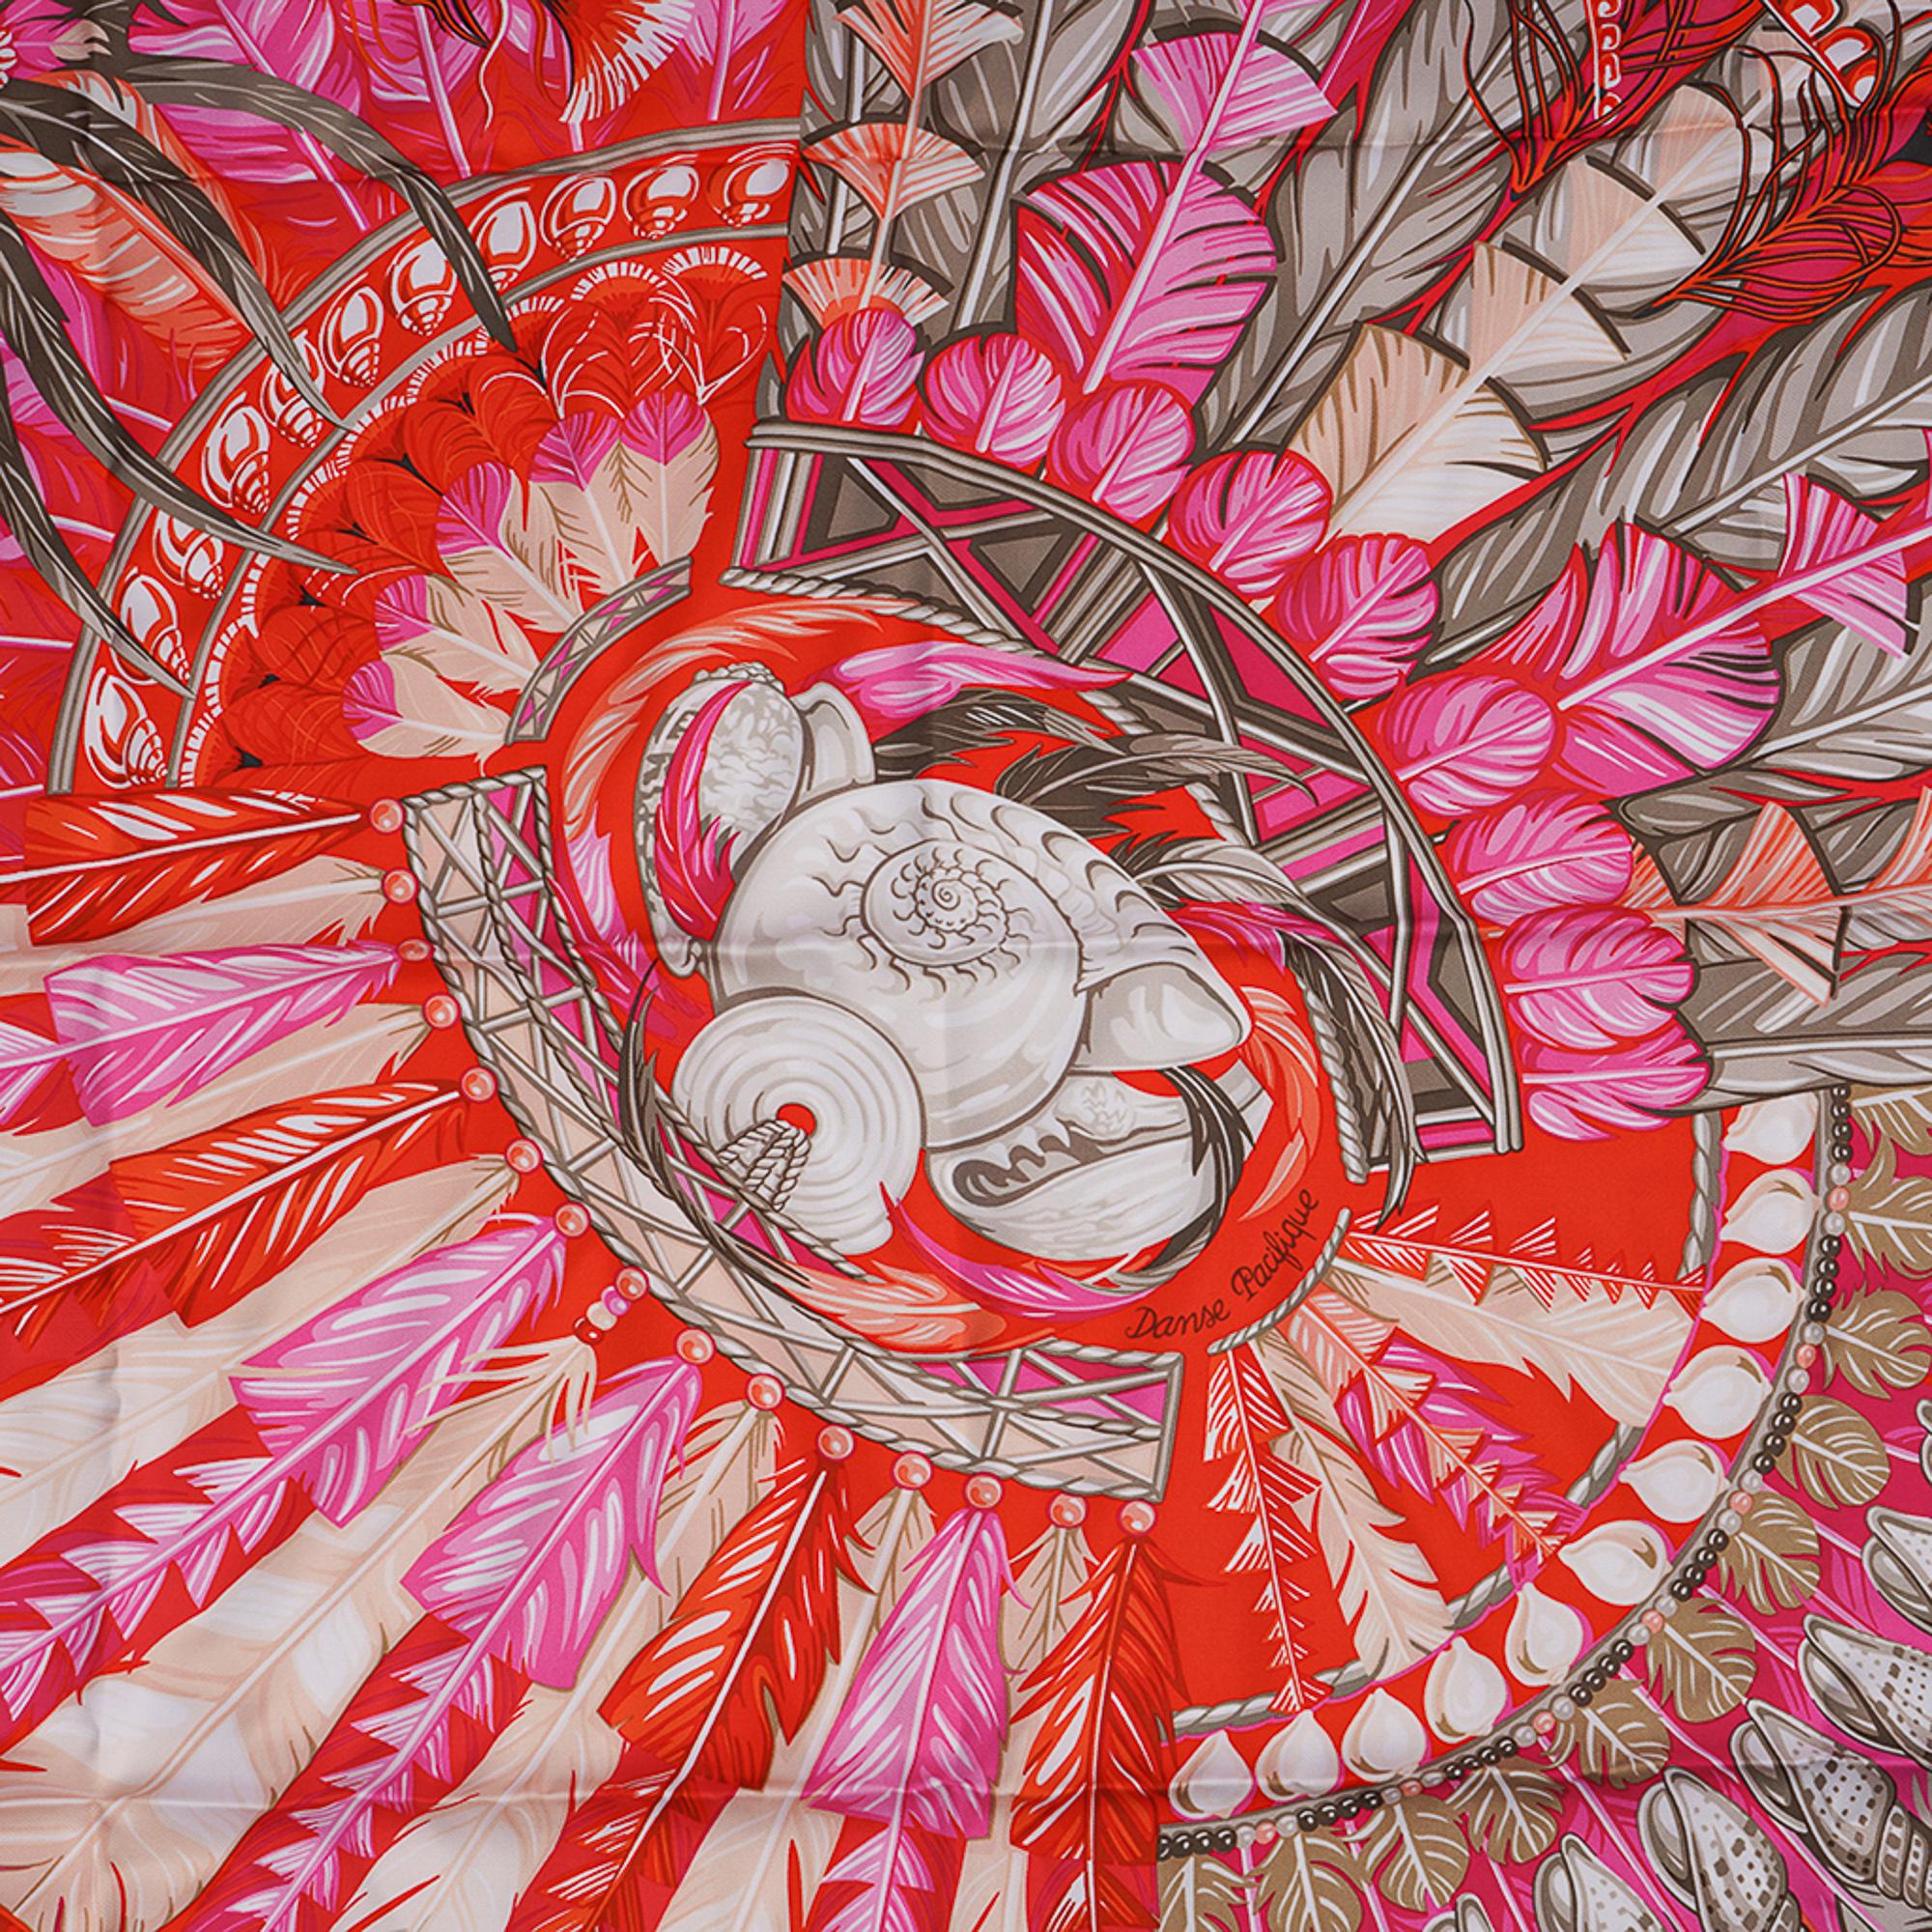 Mightychic offre une garantie d'authenticité du foulard en soie Hermes Danse Pacifique de Laurence Bourthoumieux.
Rend hommage à la culture de la Nouvelle-Guinée.
Présente les coiffes du Pacifique ornées de plumes et de cauris.
Colorway Orange et